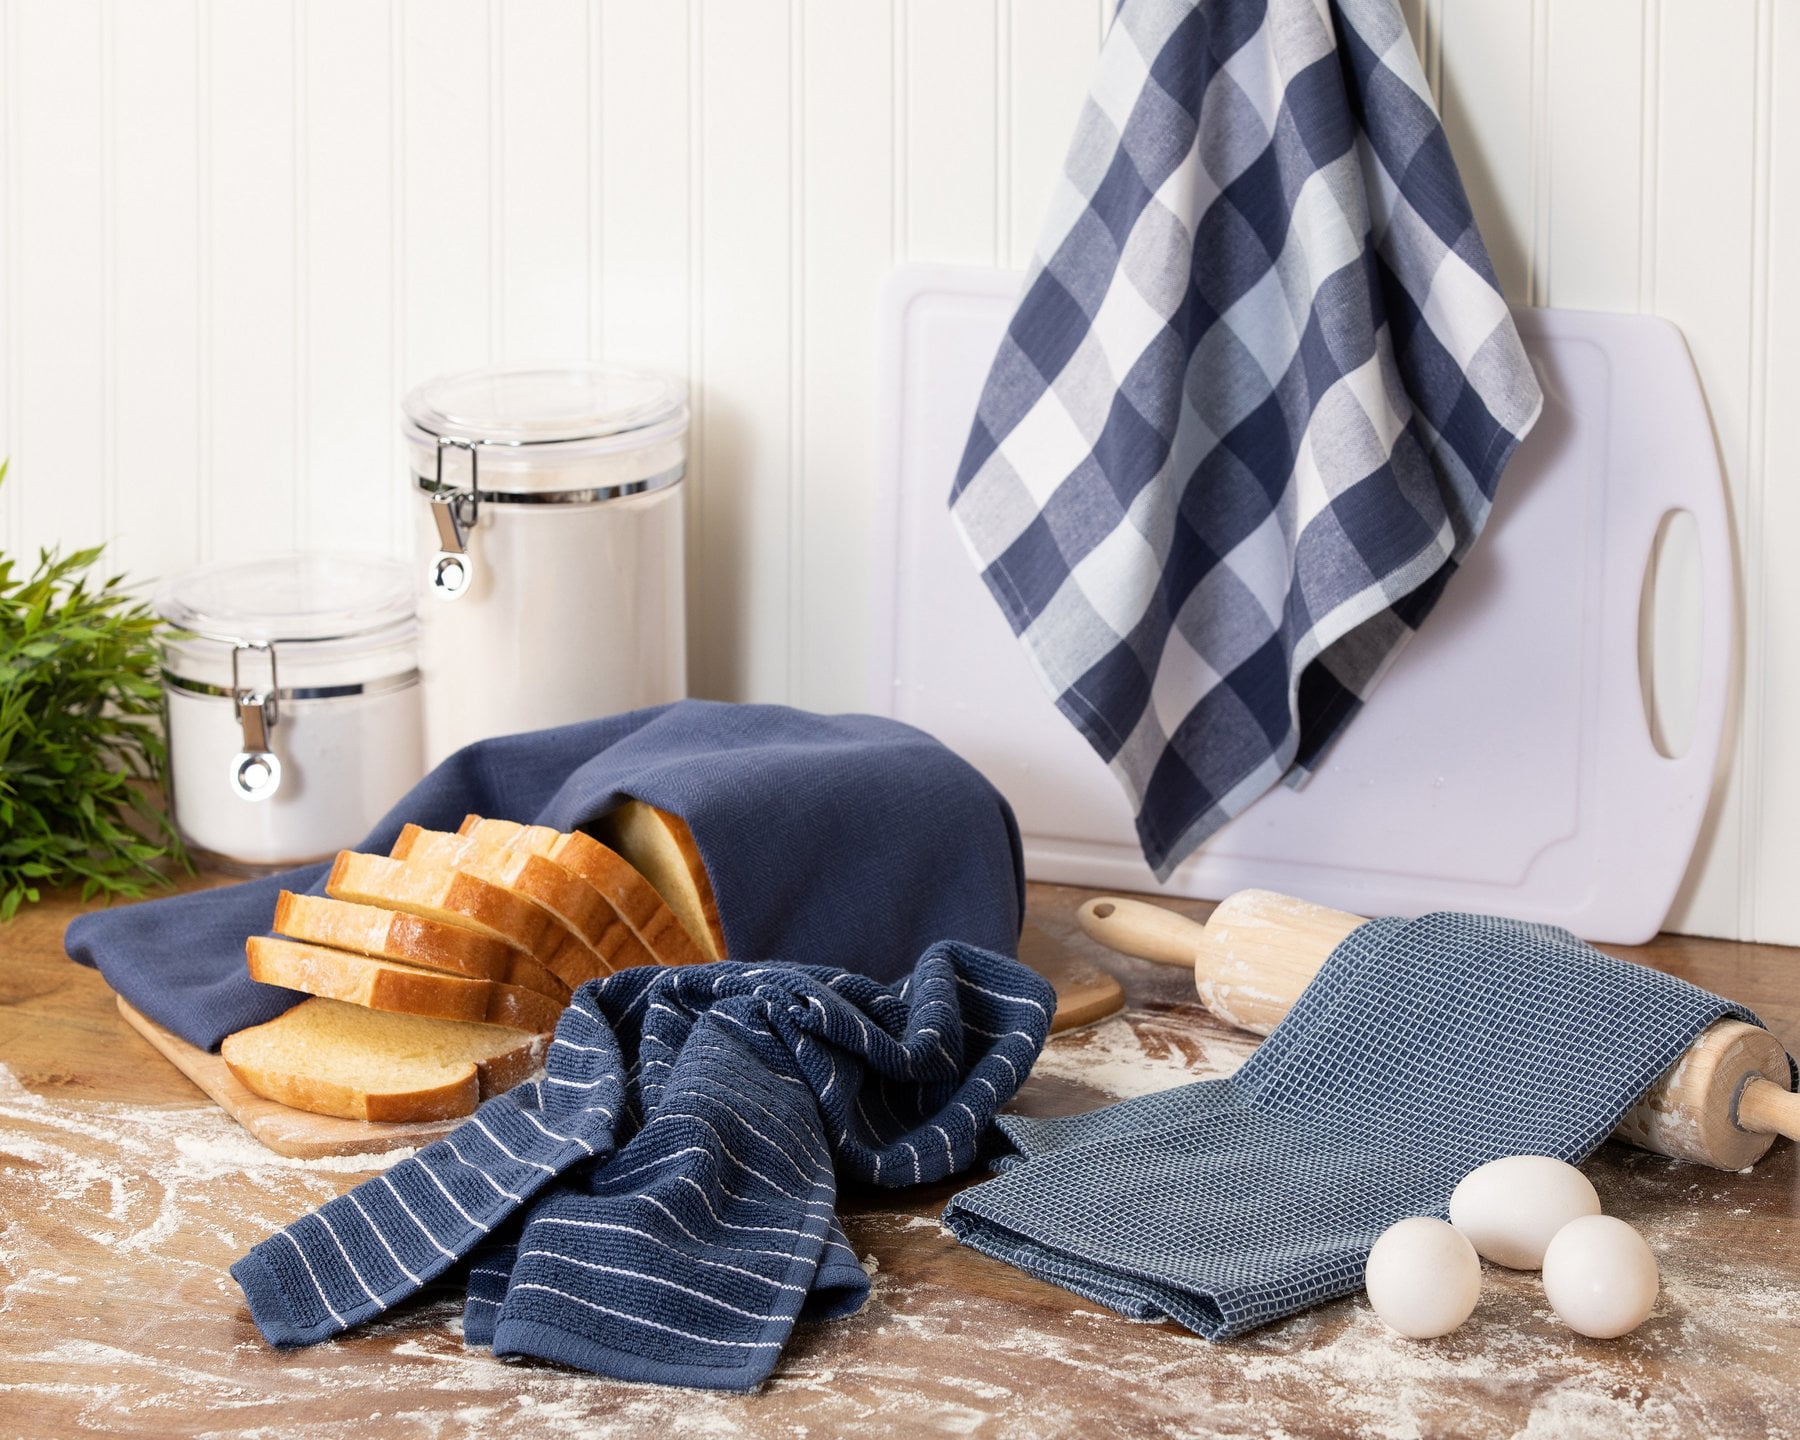 16 pcs - Kitchen Dish Towels, 100% Cotton Bulk Economy Wholesale Tea Towels  & Bar Towels, White & Blue Dish Towels 